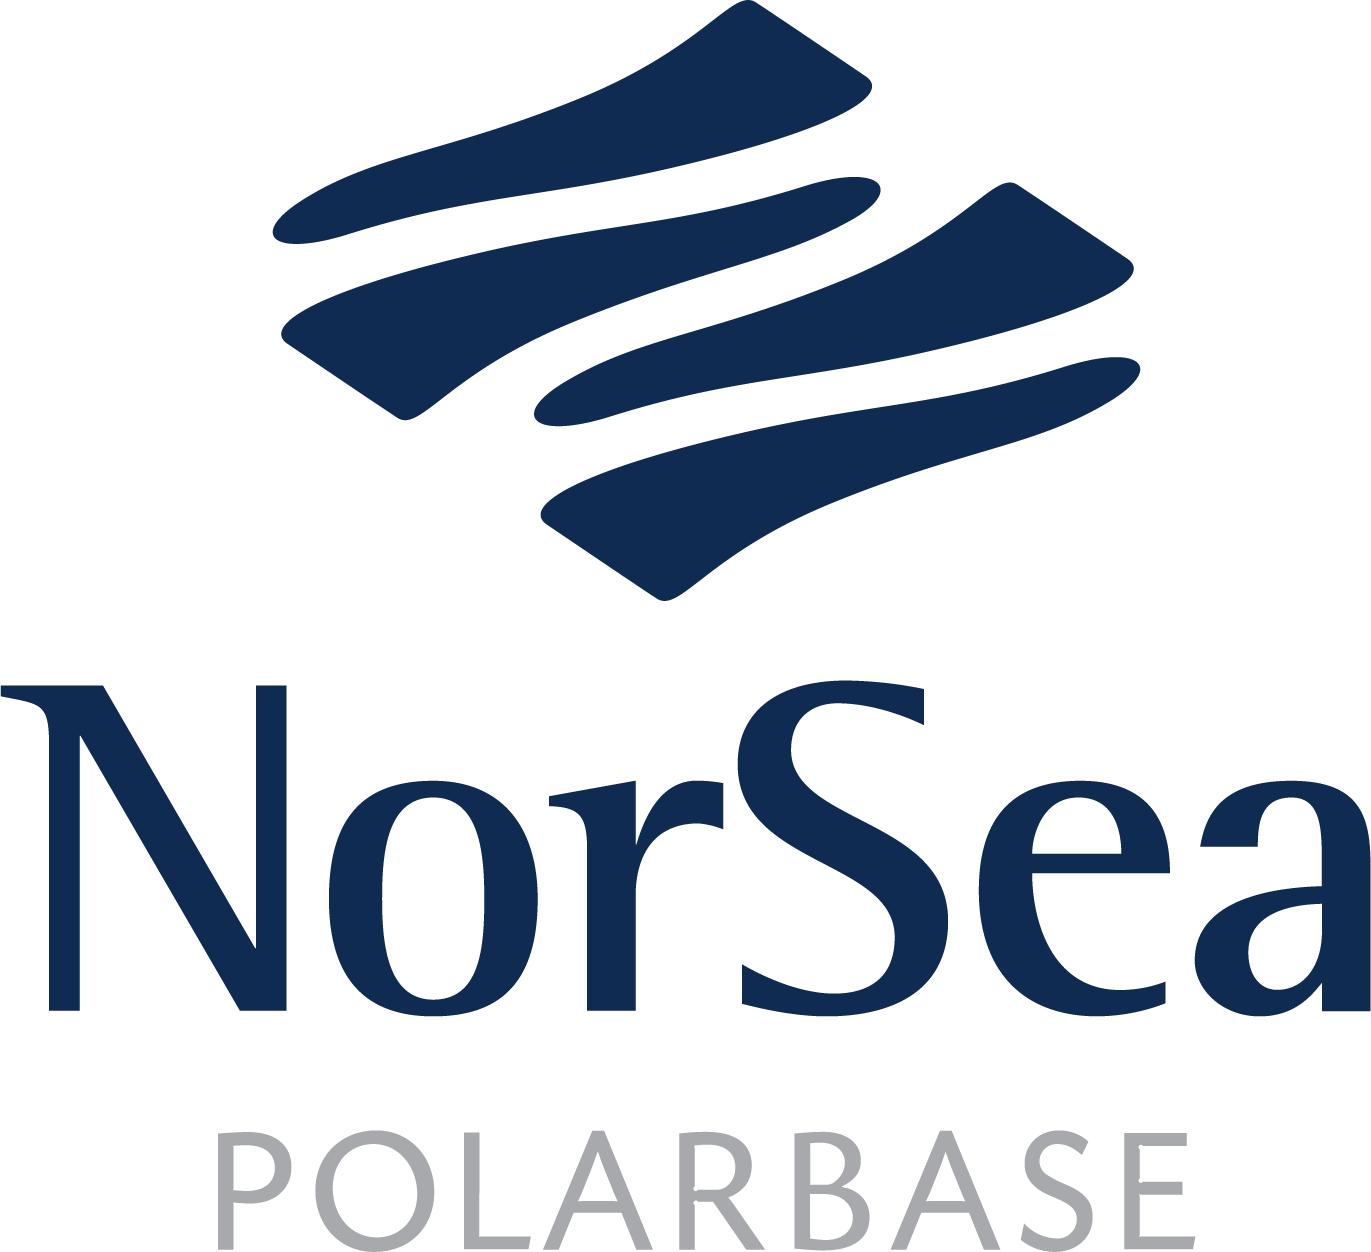 Polarbase logo